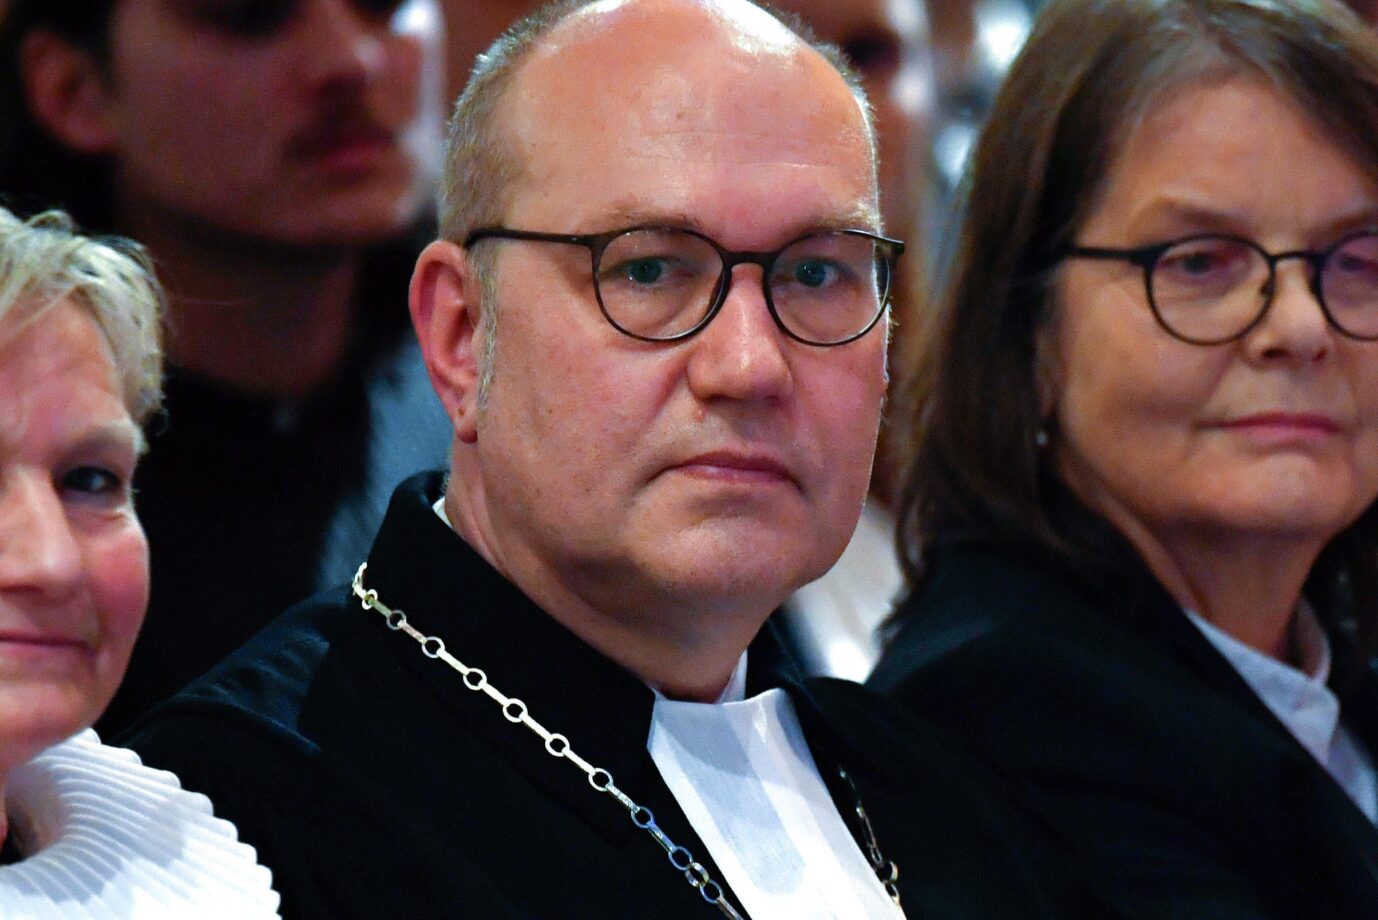  Diakonie-Präsident Rüdiger Schuch beim Gottesdienst anläßlich seiner Amtseinführung im Februar in Berlin.